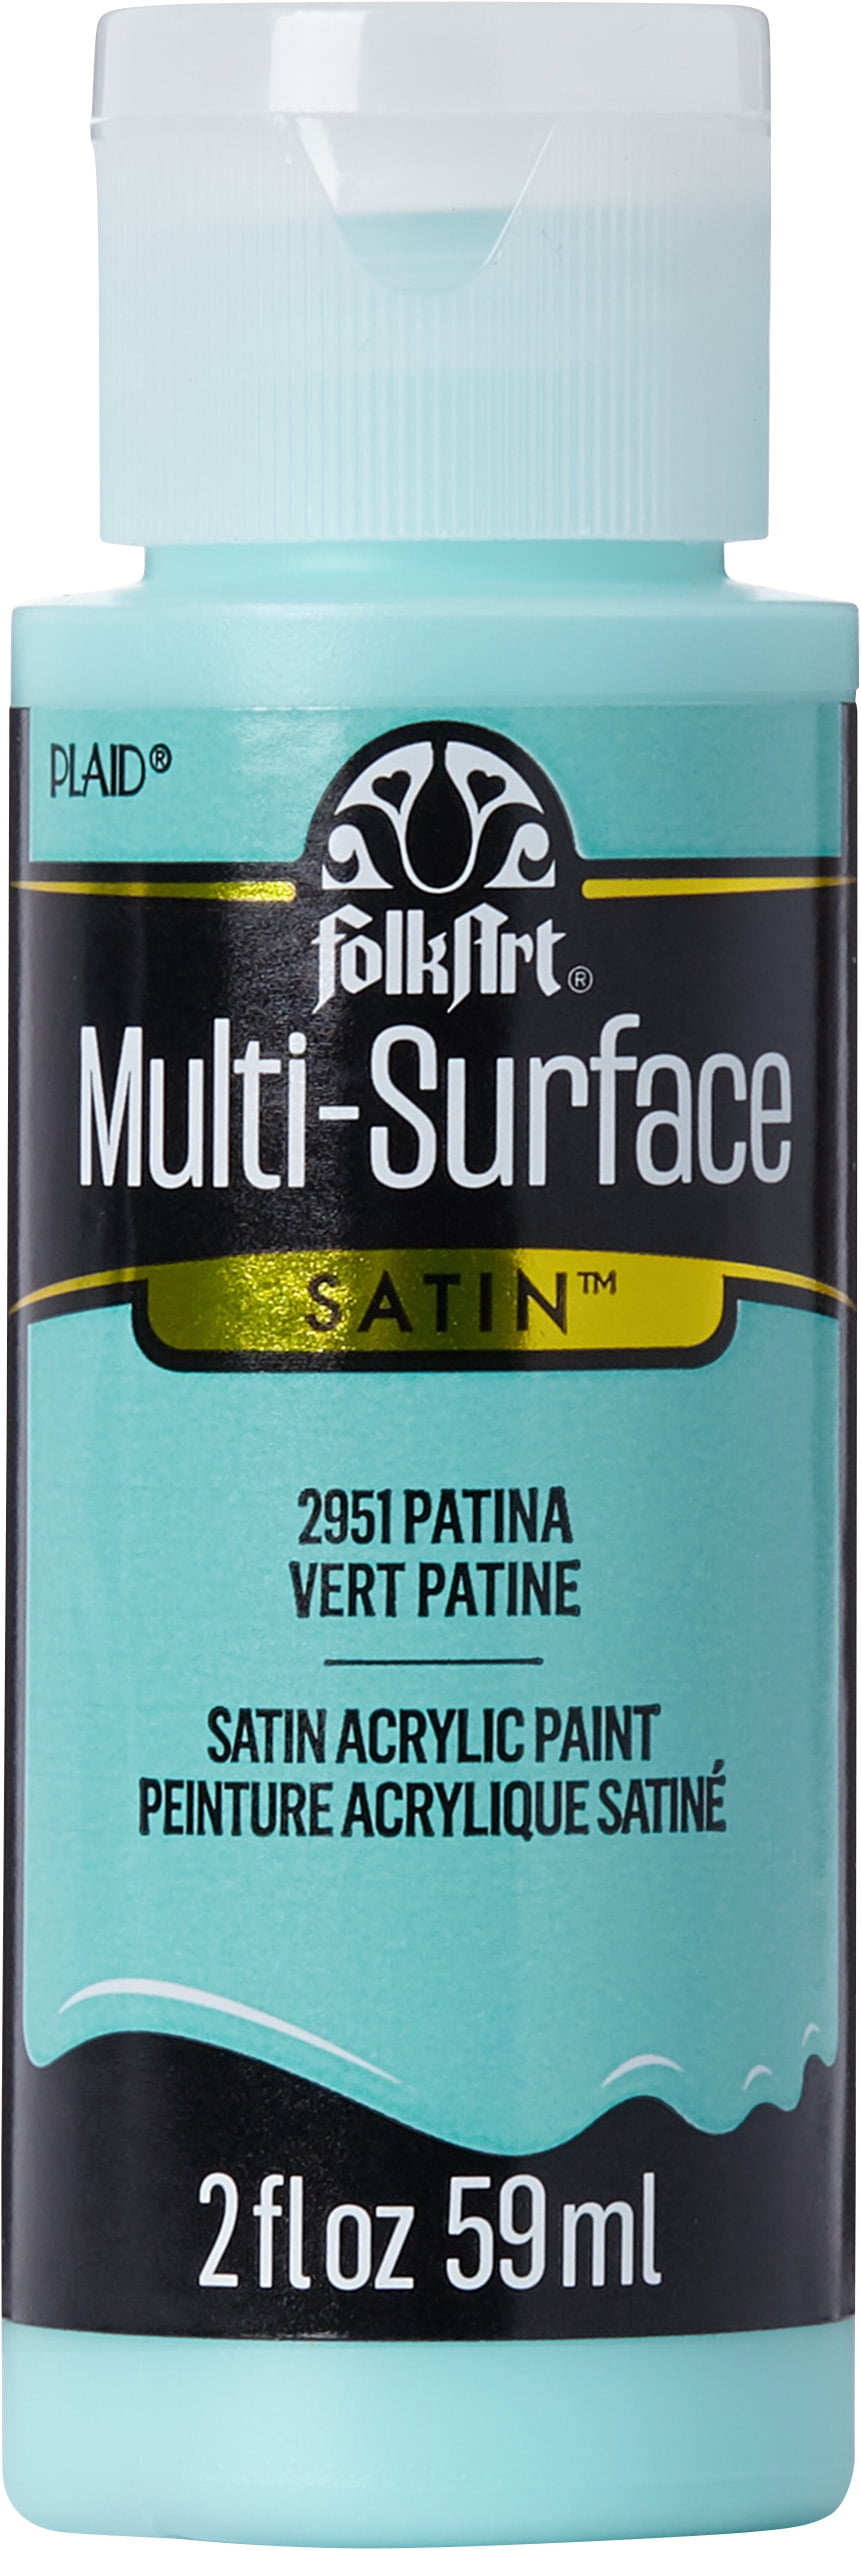 FolkArt Multi-Surface Satin Acrylic Paint, Hobby Lobby, 1848852